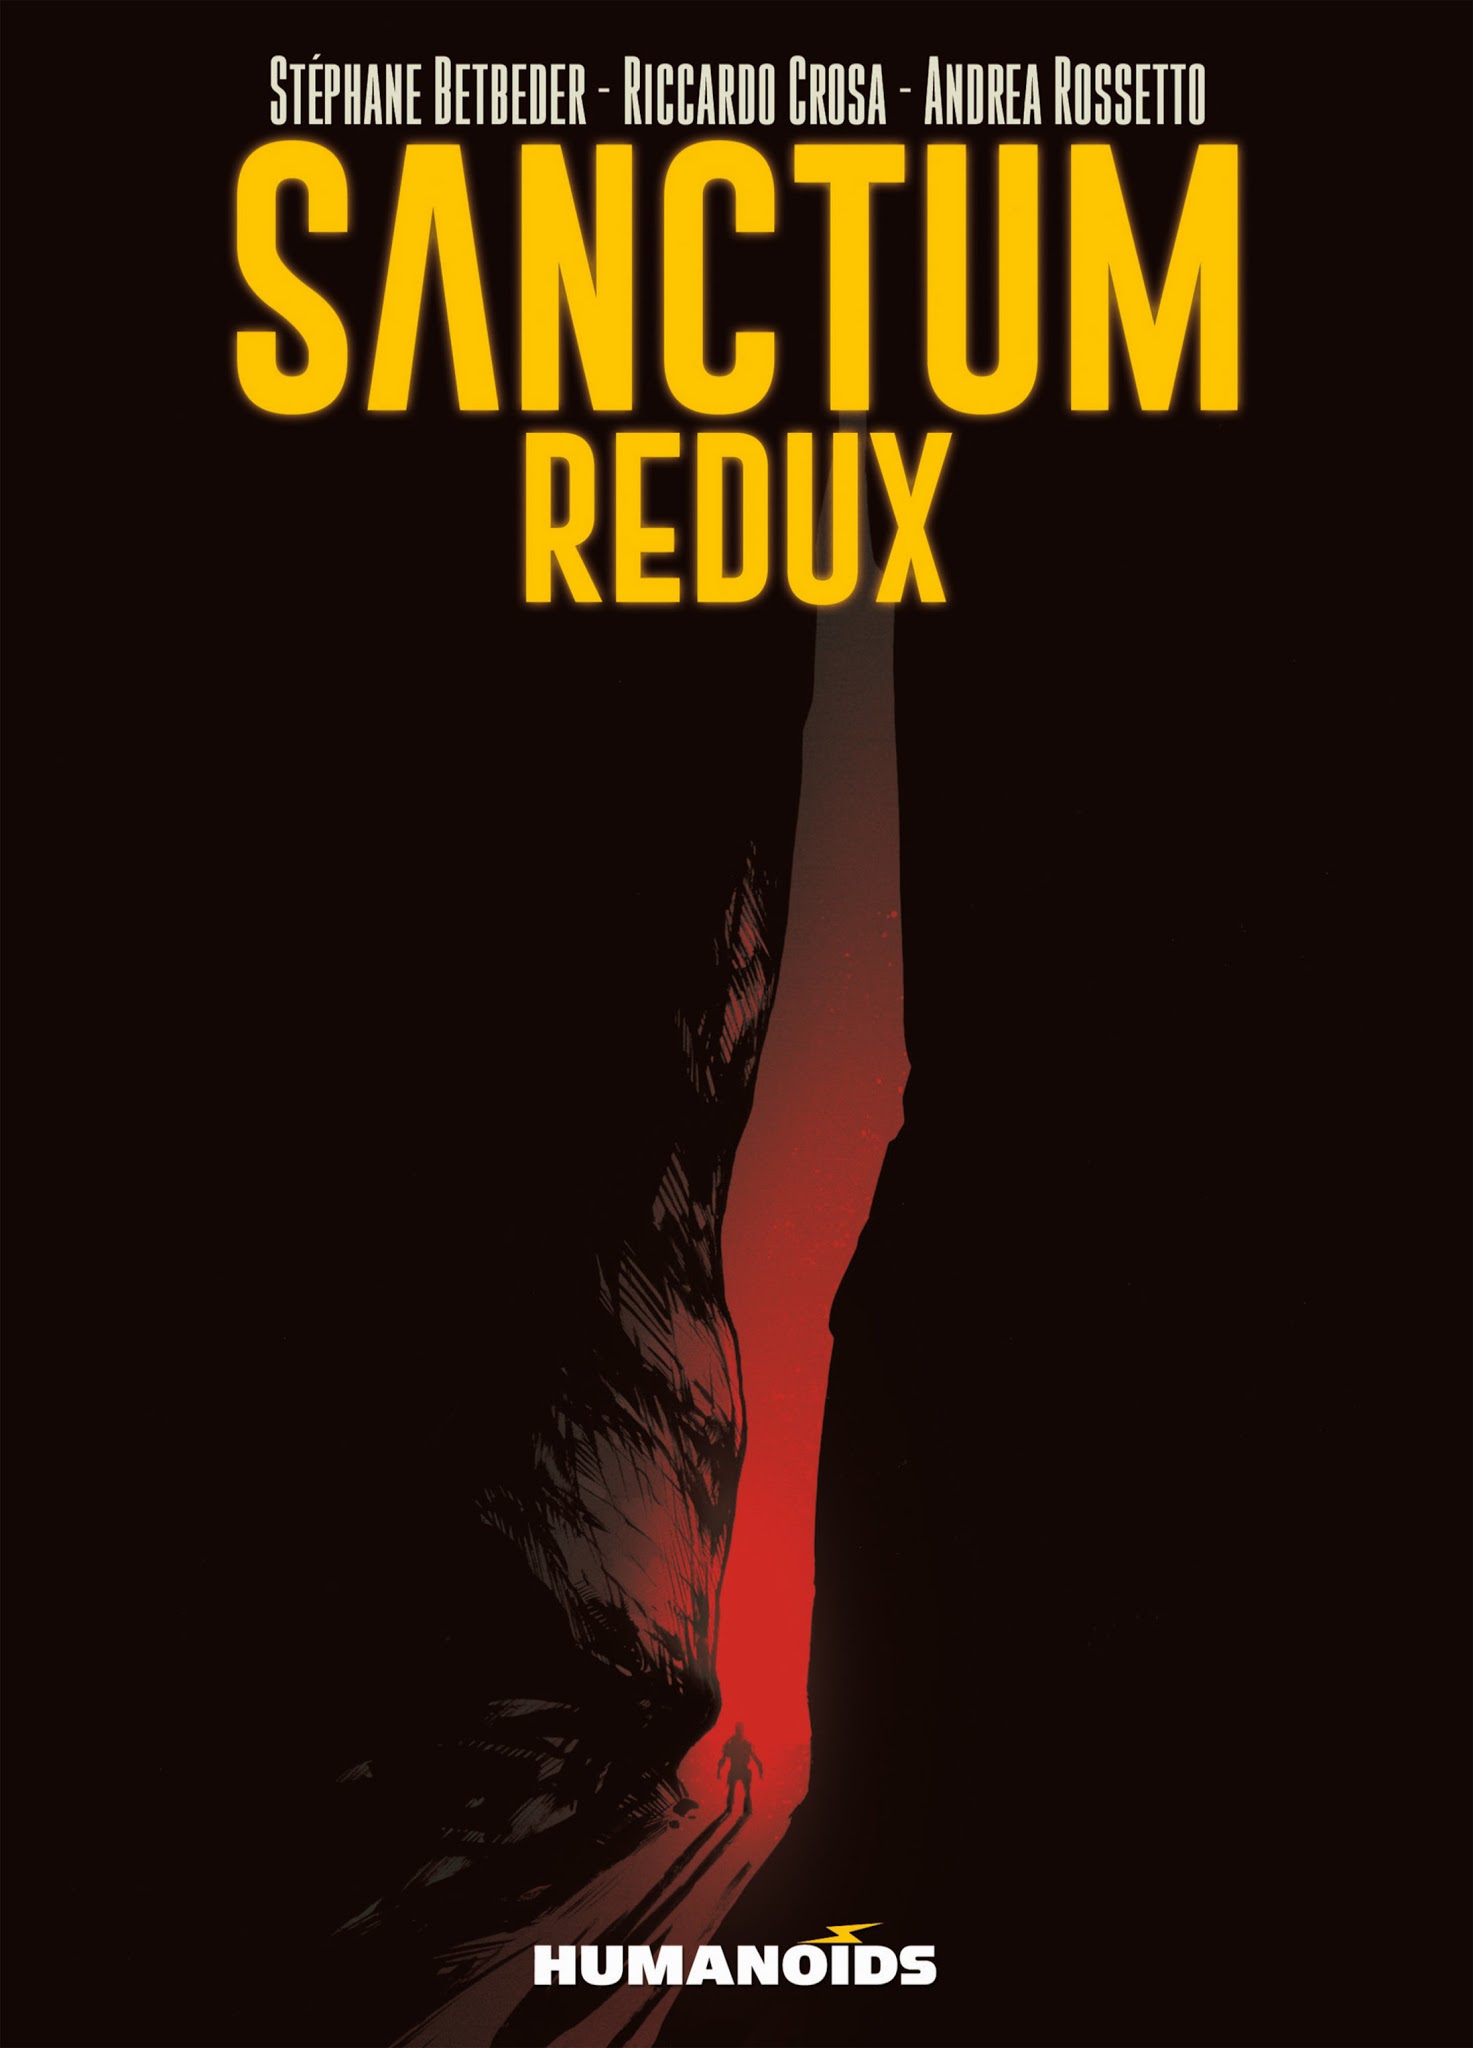 Read online Sanctum Redux comic -  Issue #2 - 2